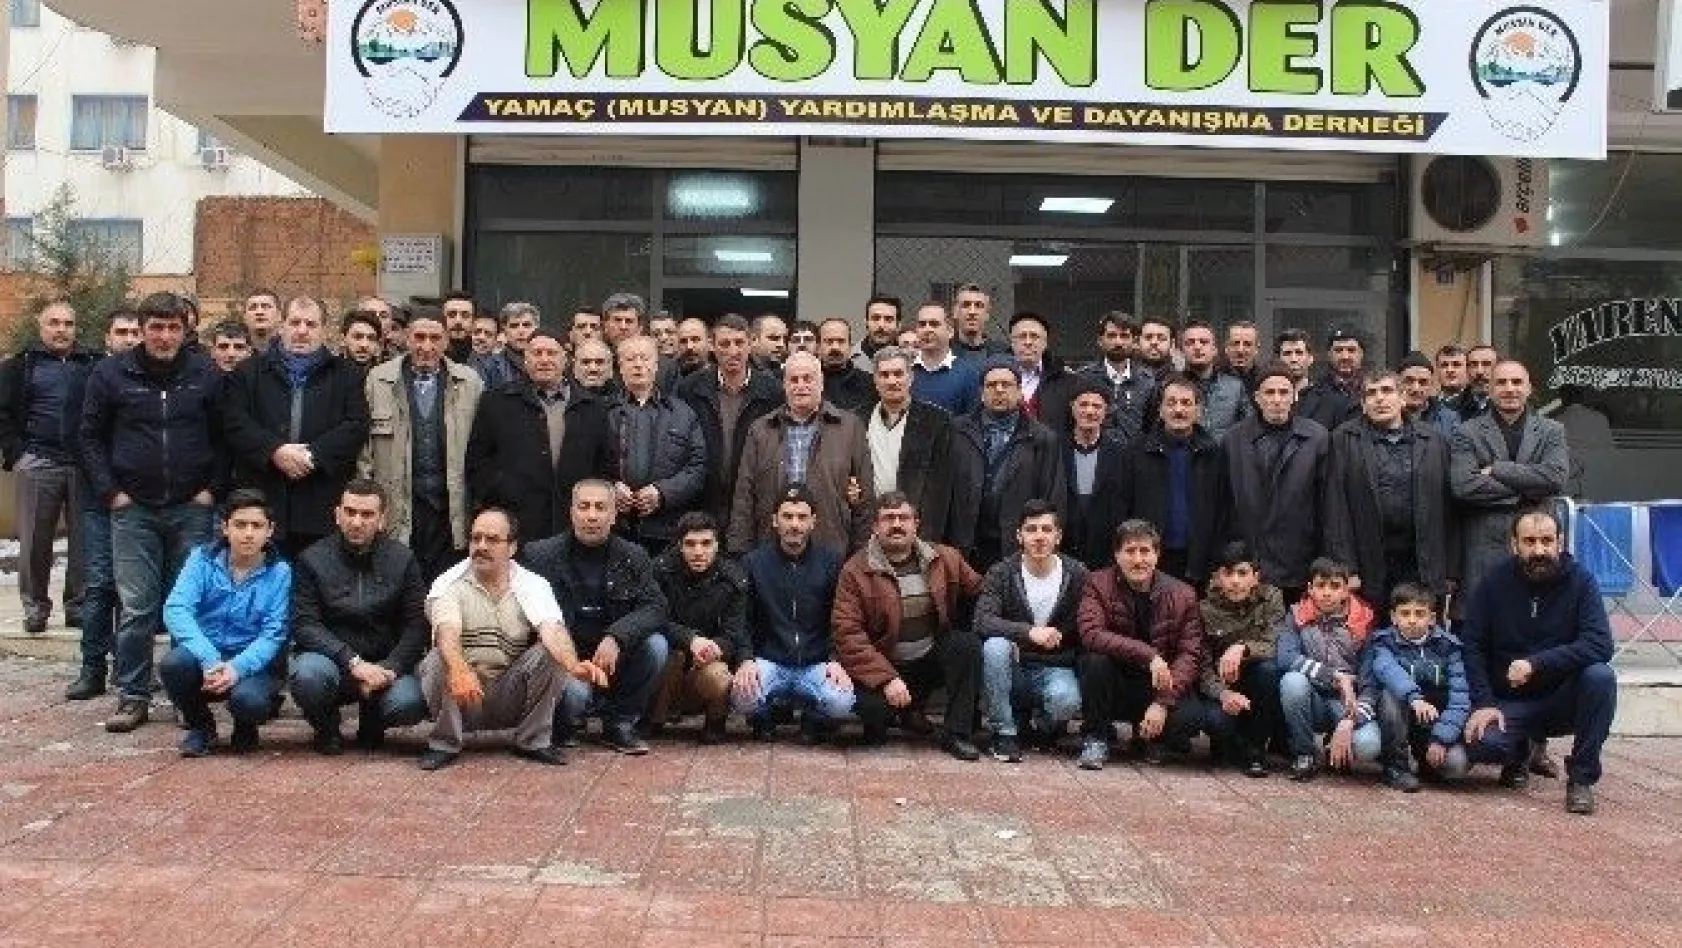 Diyarbakır'da Musyan-Der kuruldu
